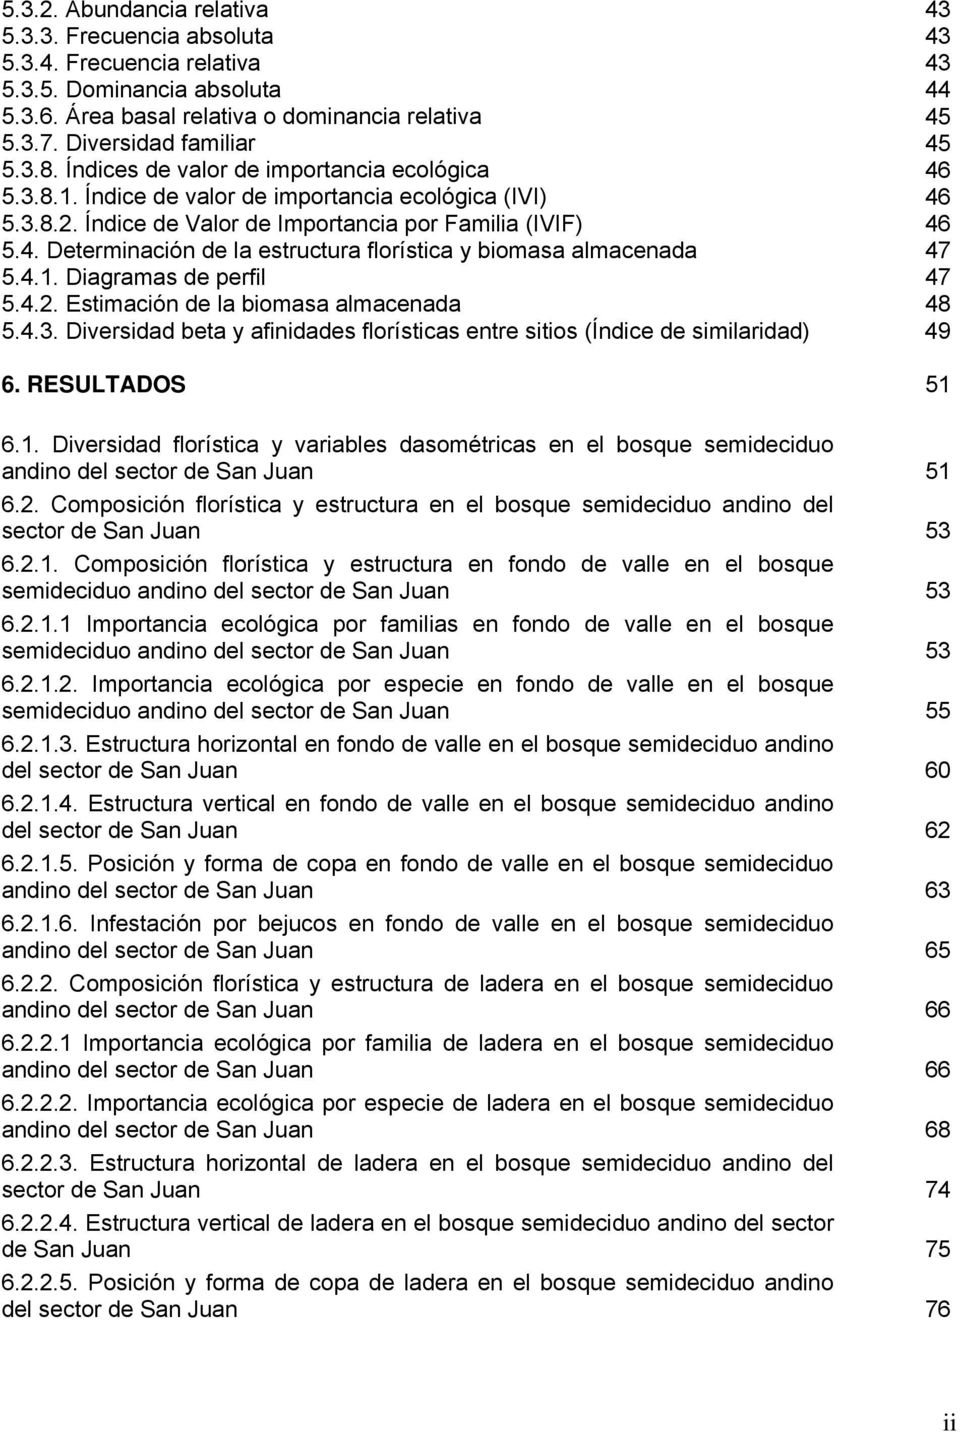 4.1. Diagramas de perfil 47 5.4.2. Estimación de la biomasa almacenada 48 5.4.3. Diversidad beta y afinidades florísticas entre sitios (Índice de similaridad) 49 6. RESULTADOS 51 6.1. Diversidad florística y variables dasométricas en el bosque semideciduo andino del sector de San Juan 51 6.